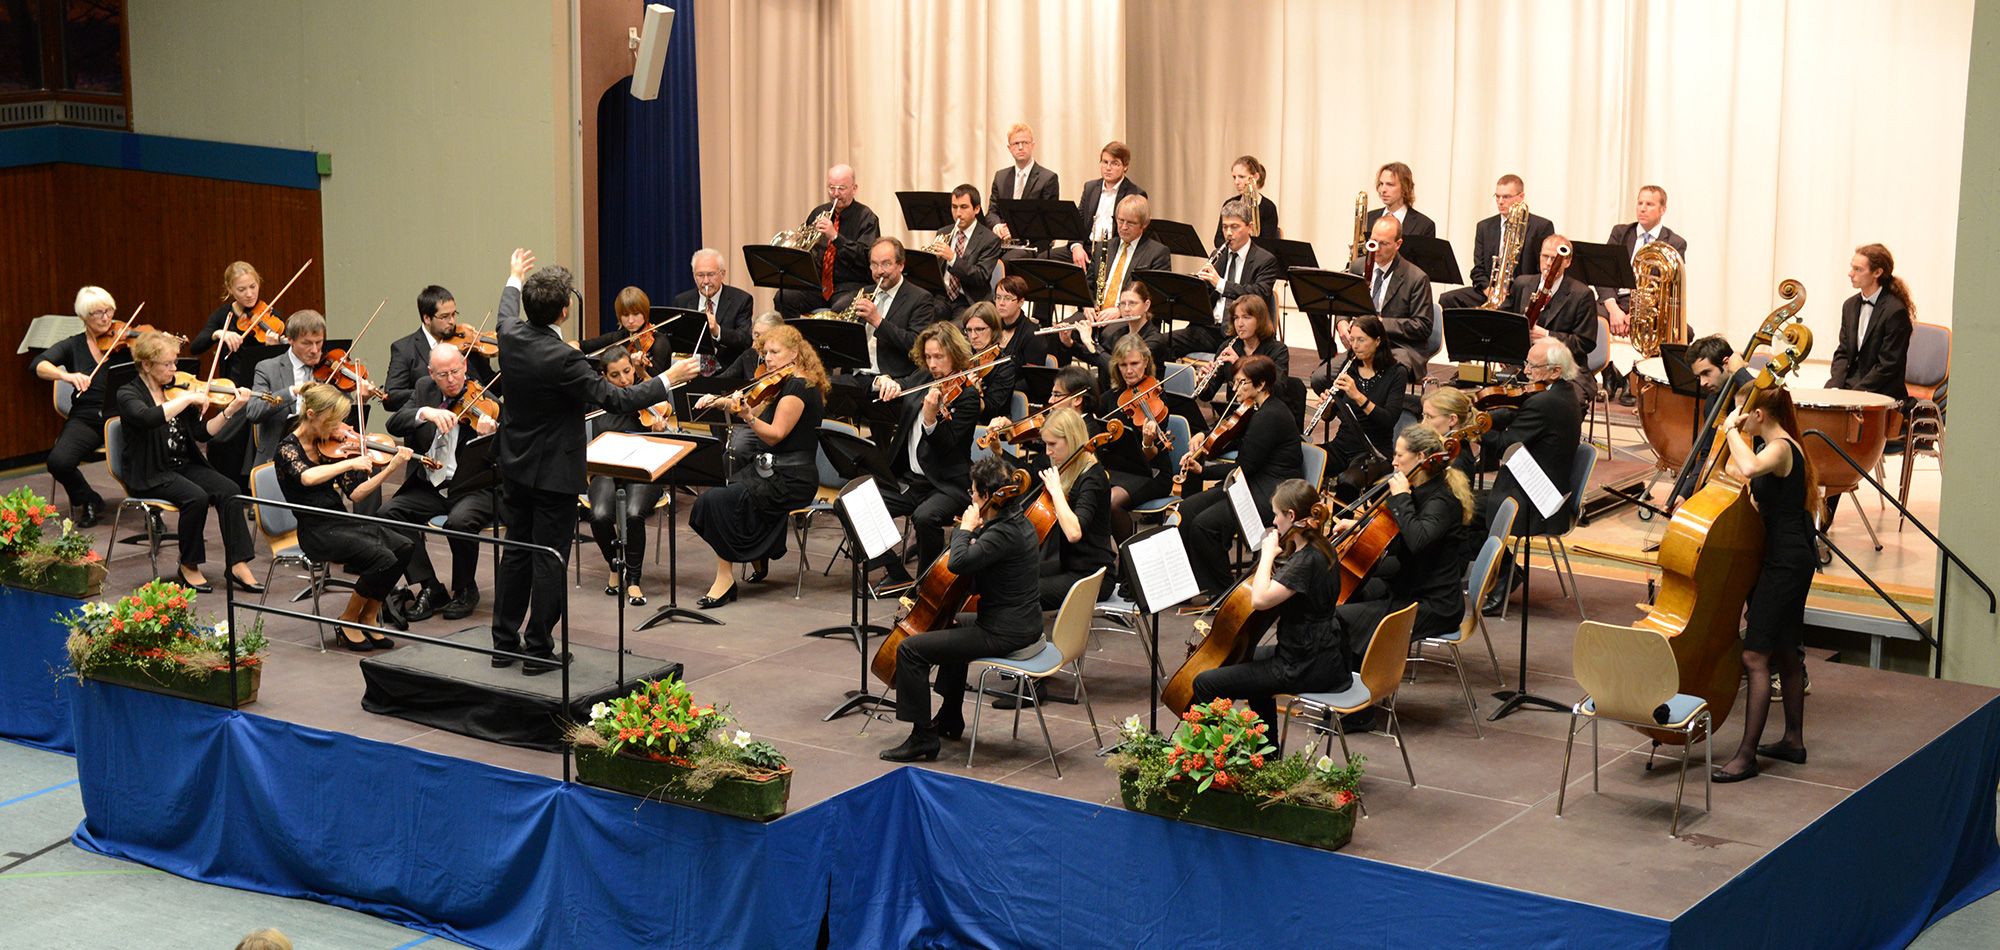 Herbstkonzert 2014 in Schwieberdingen